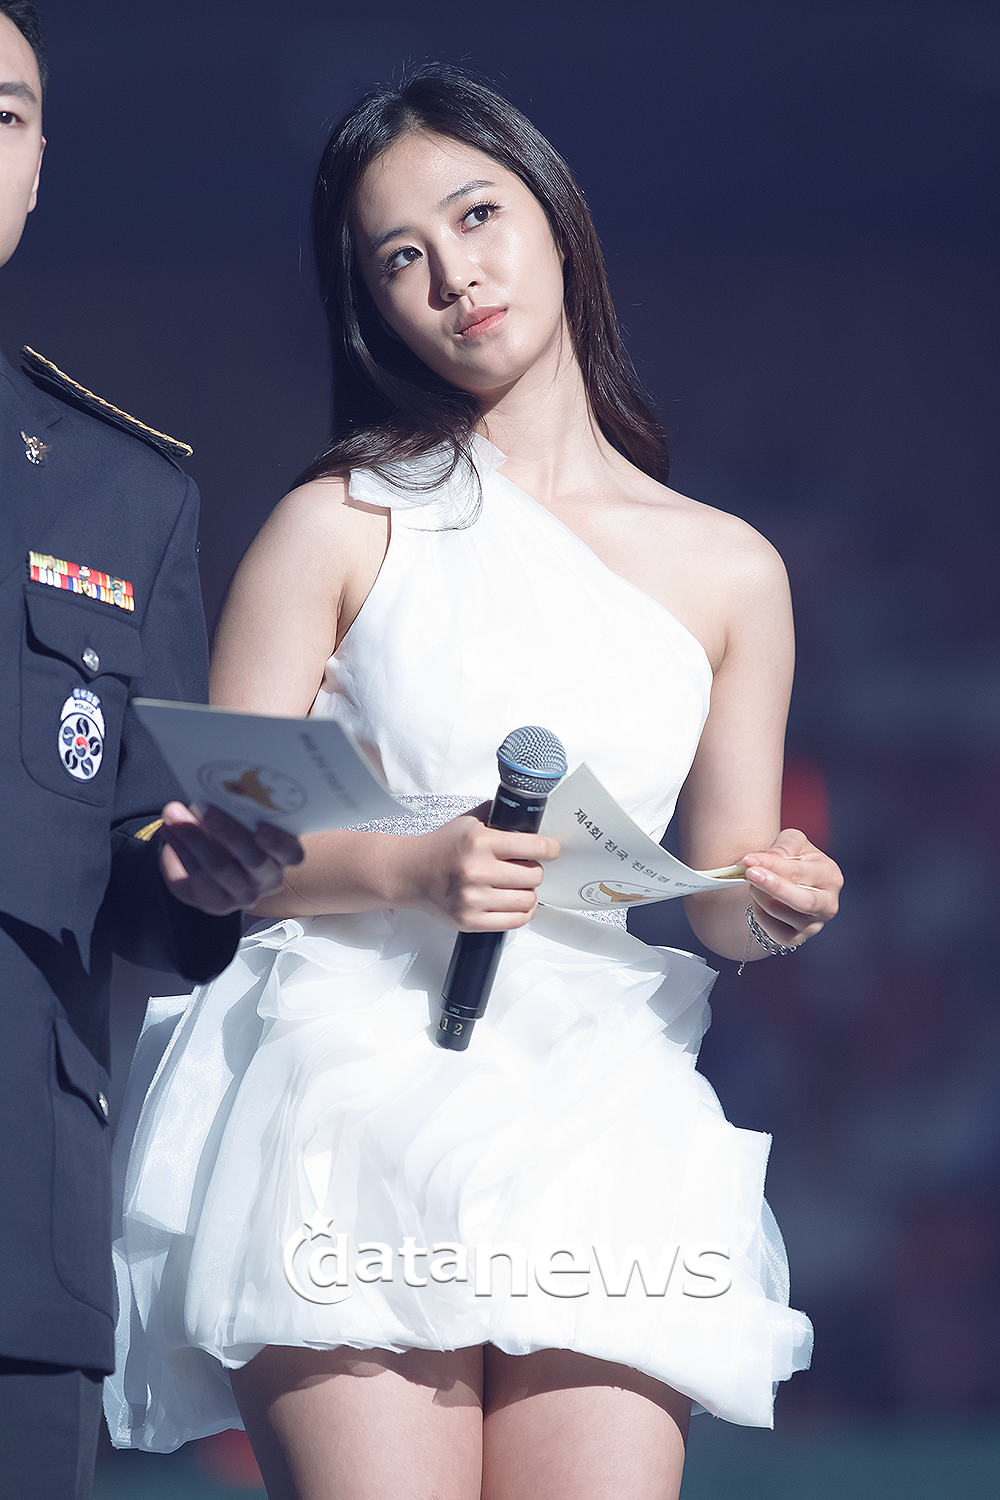 [PIC][28-08-2013]Hình ảnh của MC Yuri tại "National Auxiliary Police Unison Festival" vào chiều nay 2548BF5052213DB712A91F